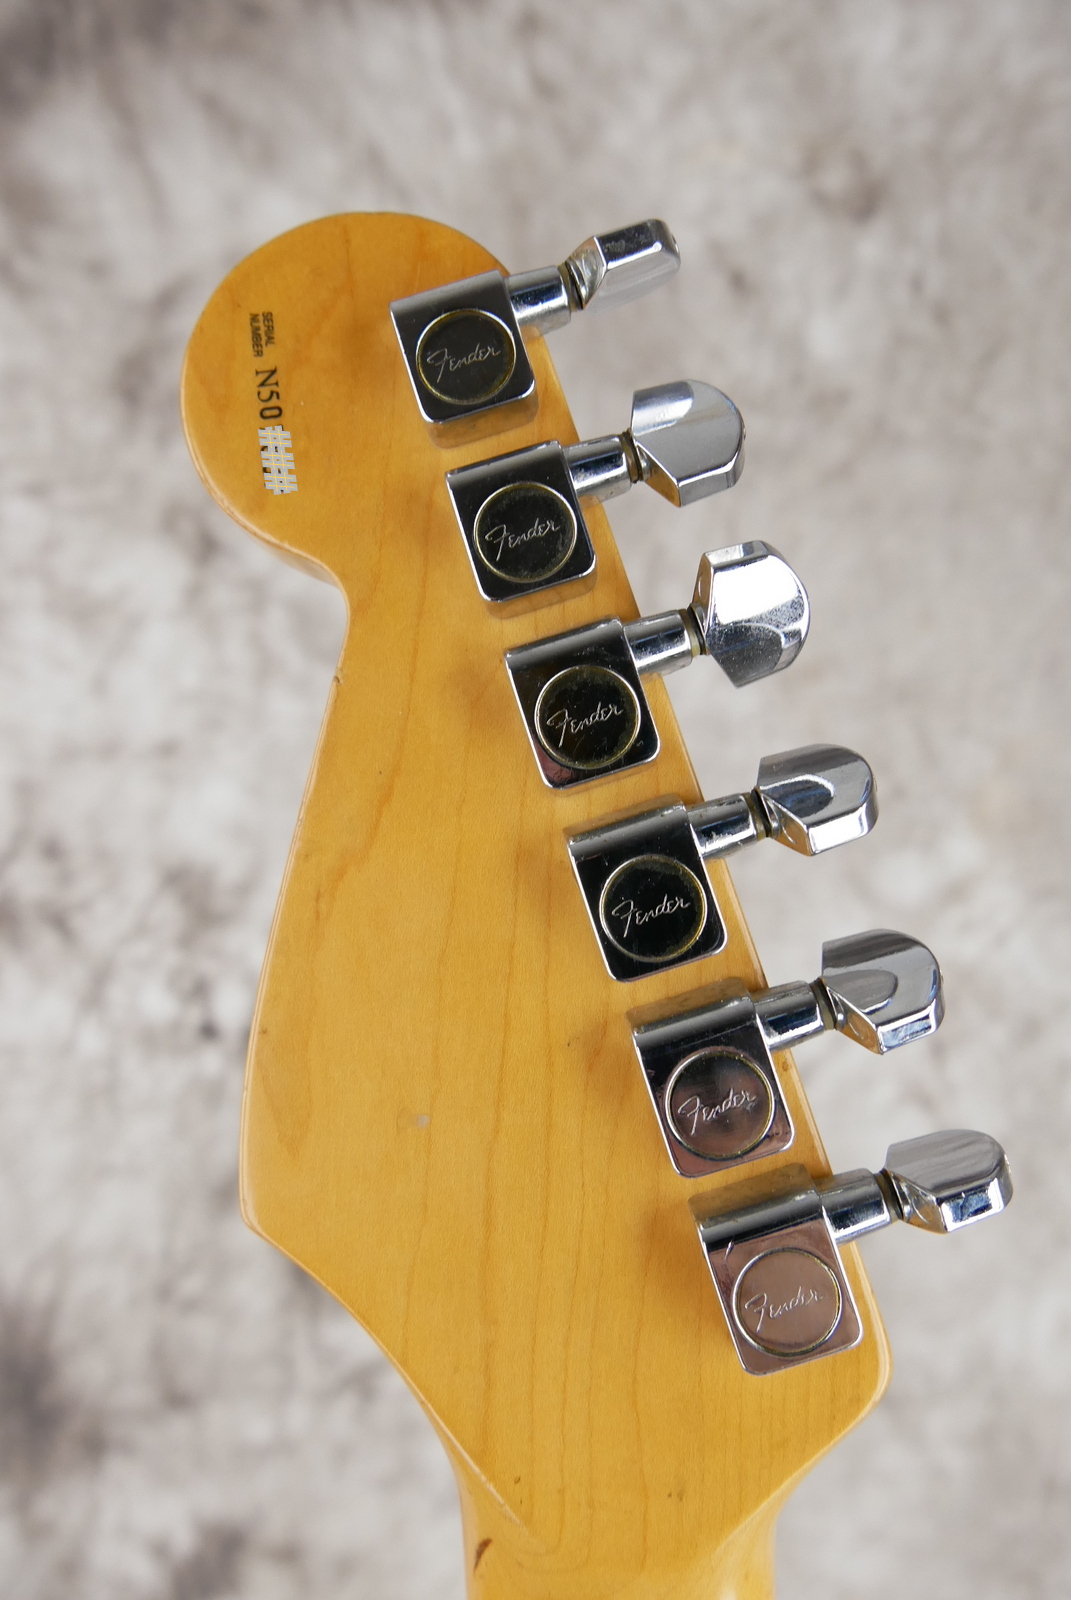 Fender_Stratocaster_AM_Standard_olympic_white_1995-010.JPG